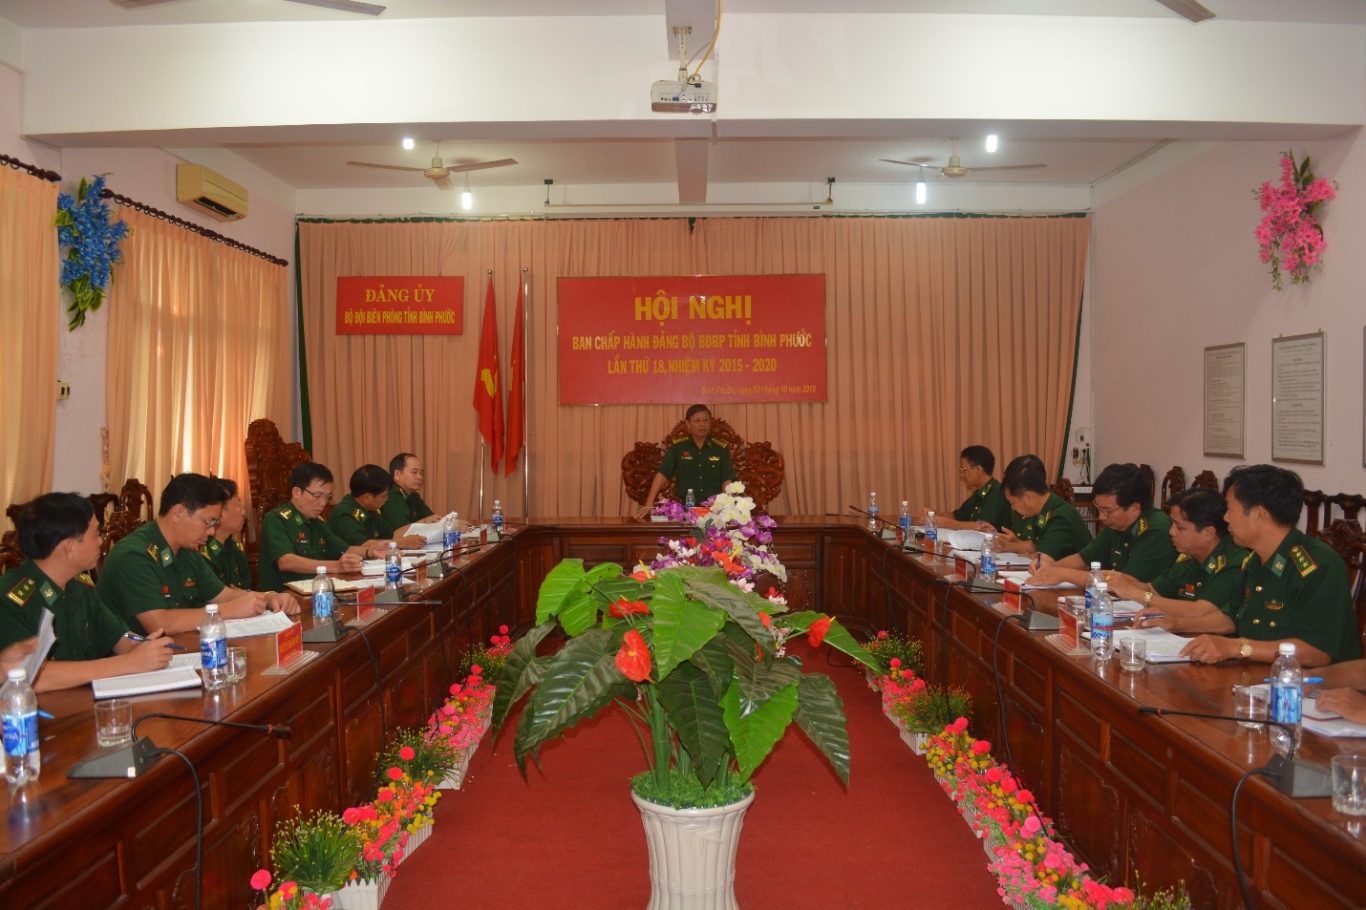 Đại tá Nguyễn Văn Phương, Bí thư Đảng ủy – Chính ủy kết luận Hội nghị